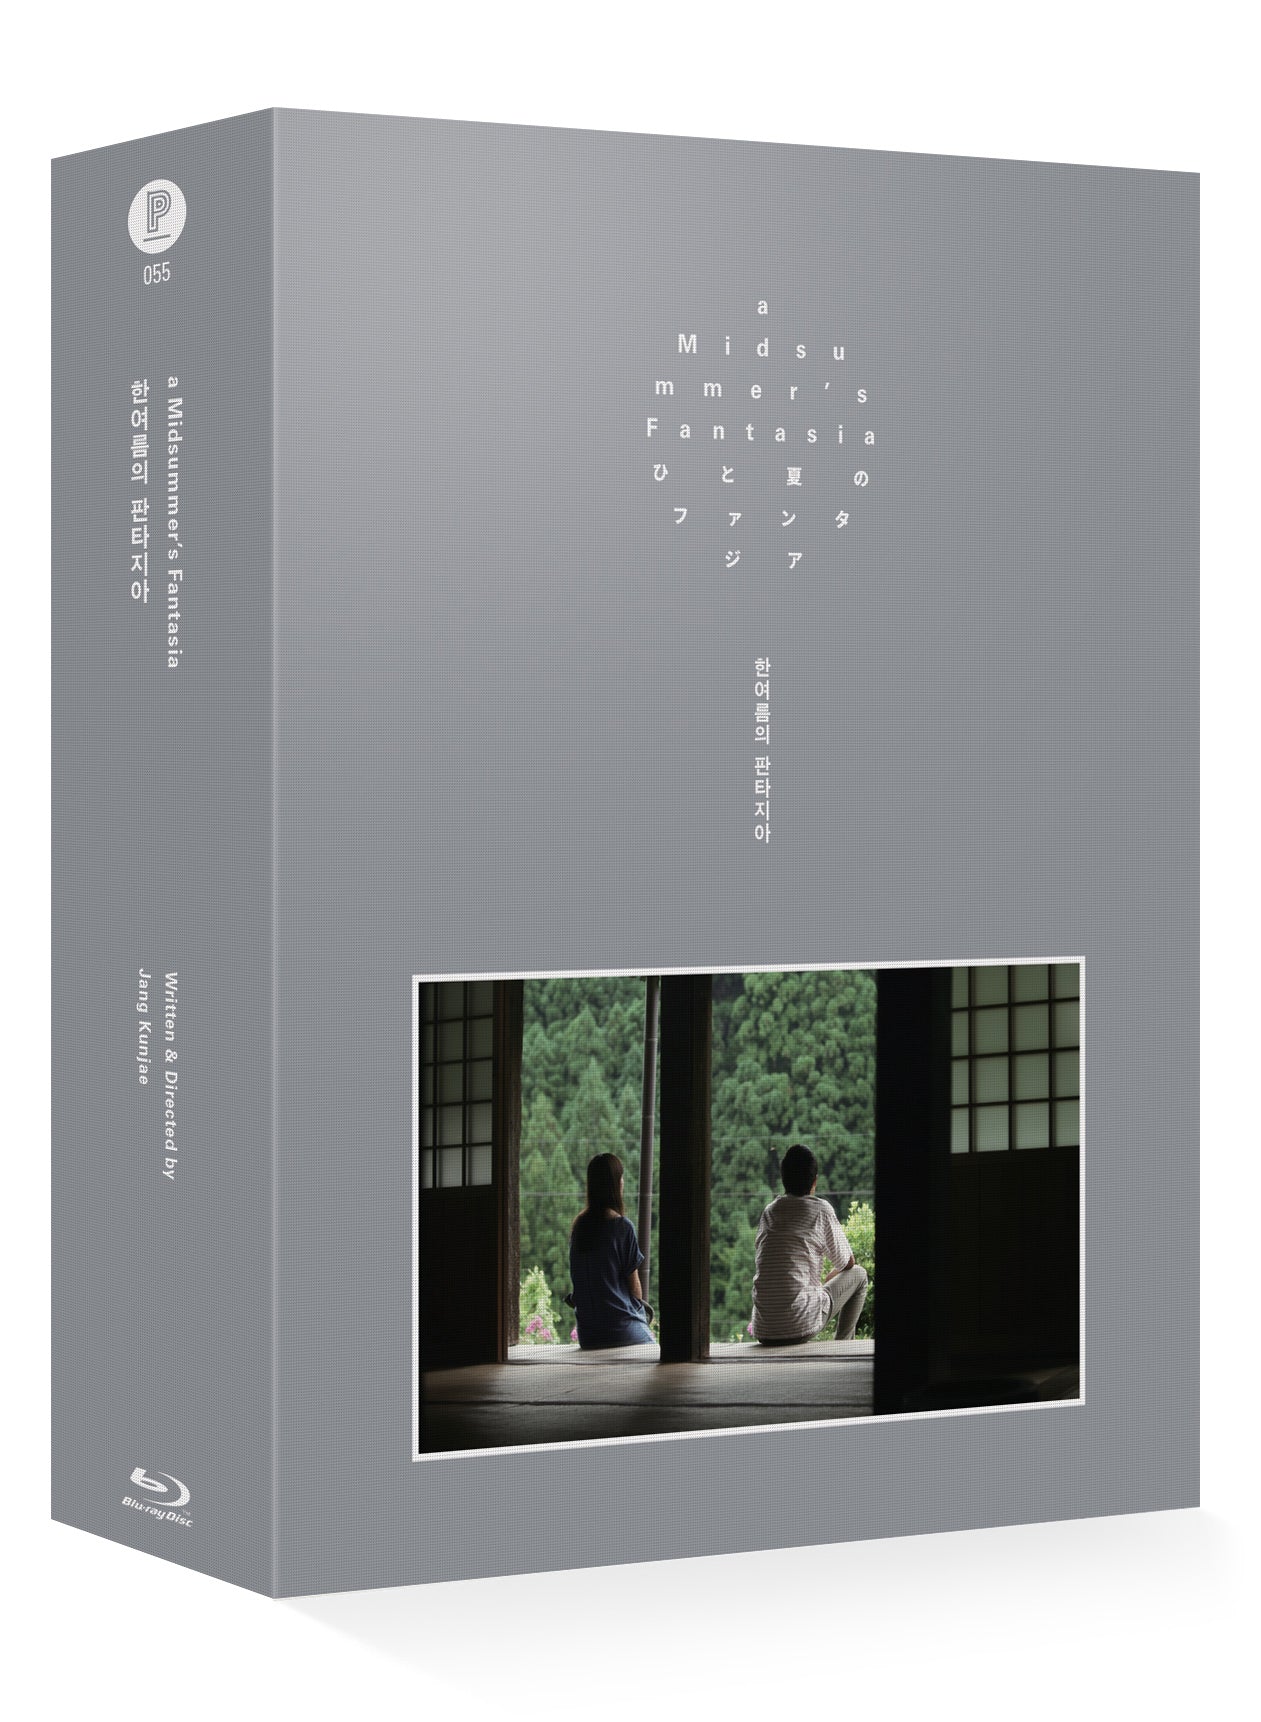 A MIDSUMMER FANTASIA: Blu-ray Collector's Box (3 Disc)